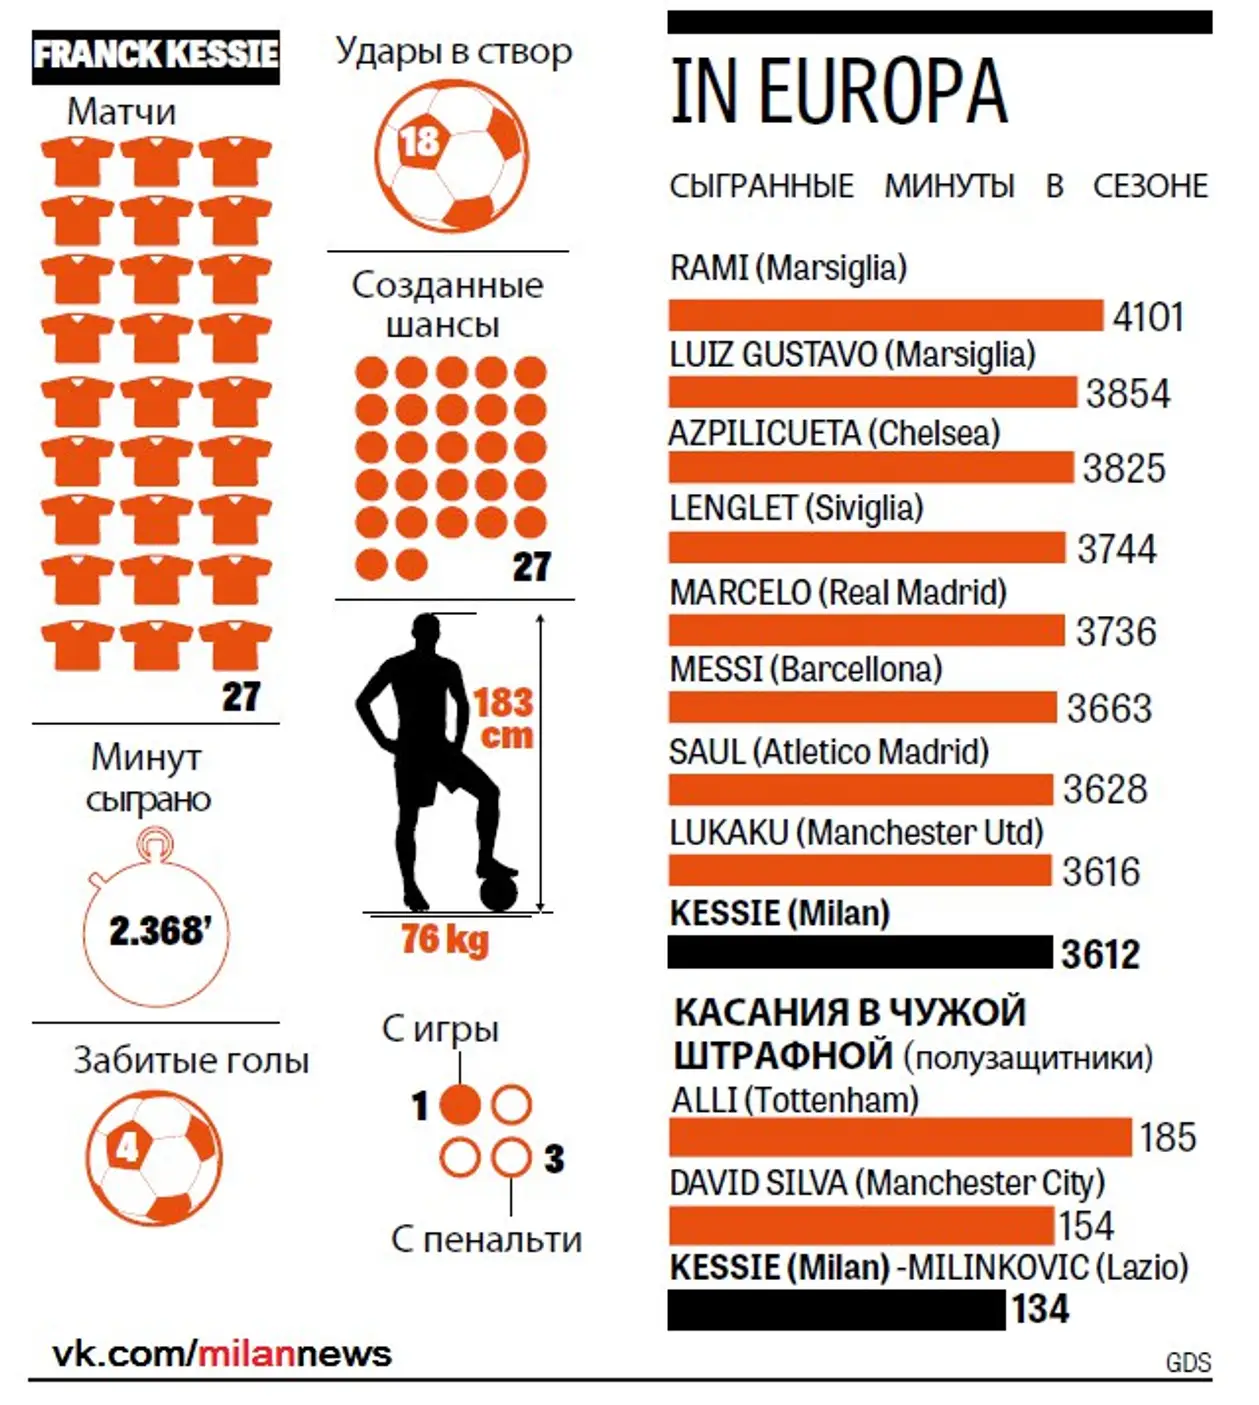 La Gazzetta dello Sport: Франк Кессье один из самых востребованных игроков текущего сезона в топ-5 европейских первенств